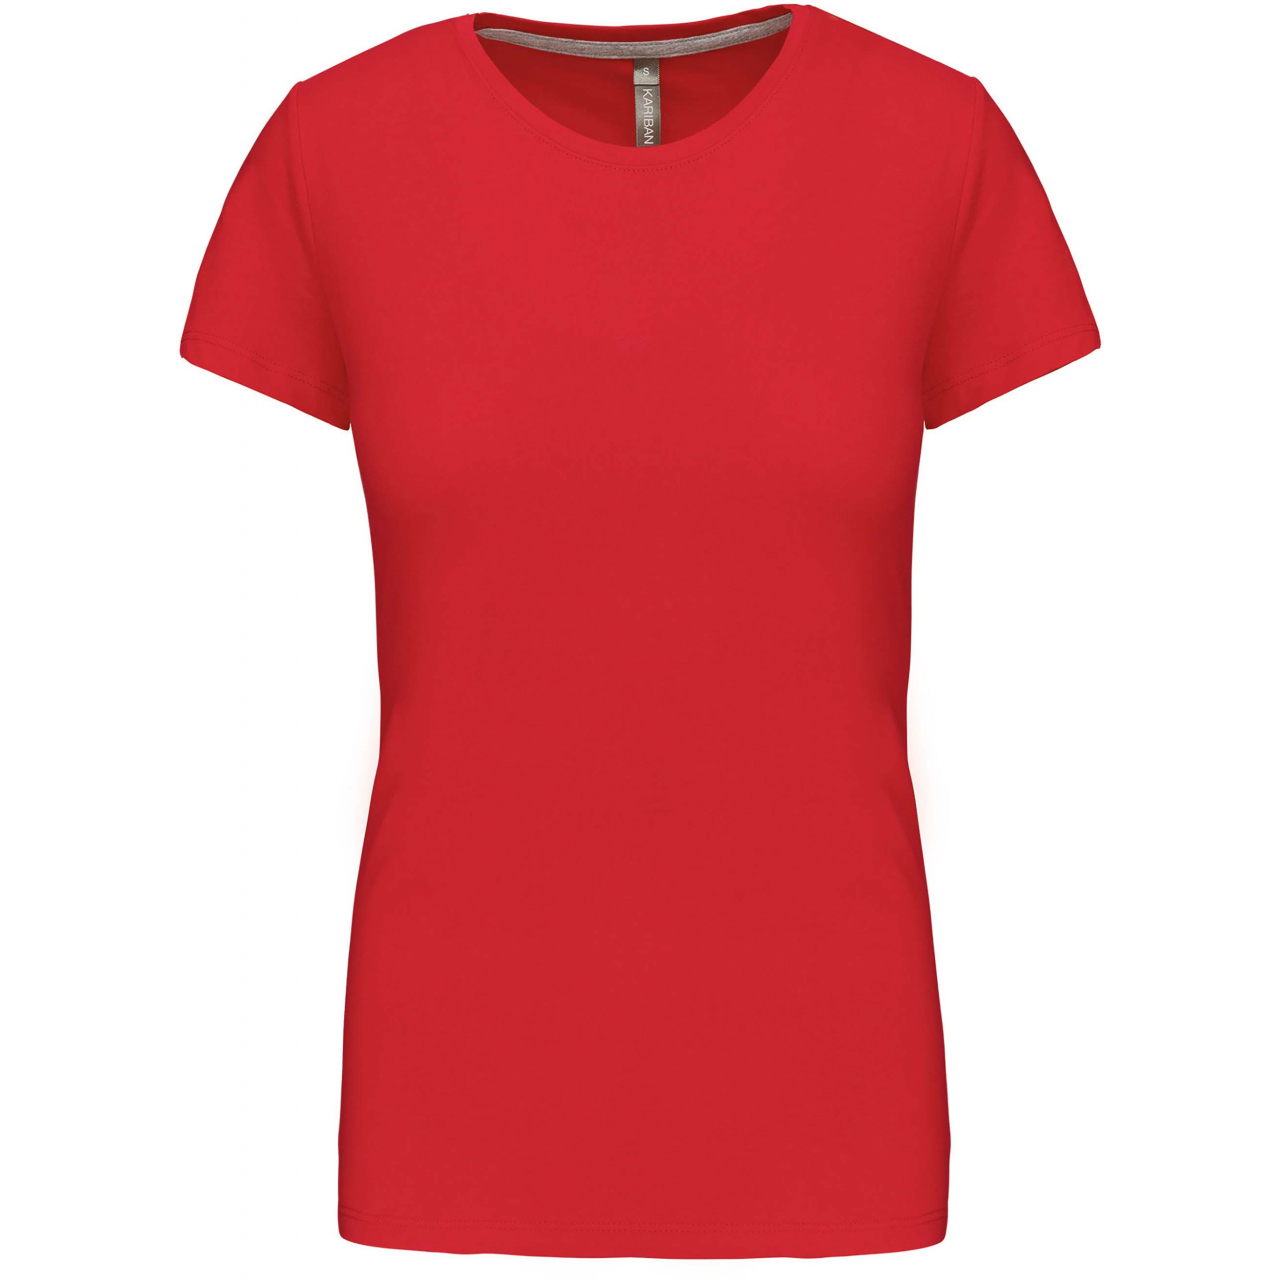 Dámské tričko Kariban s krátkým rukávem - červené, S